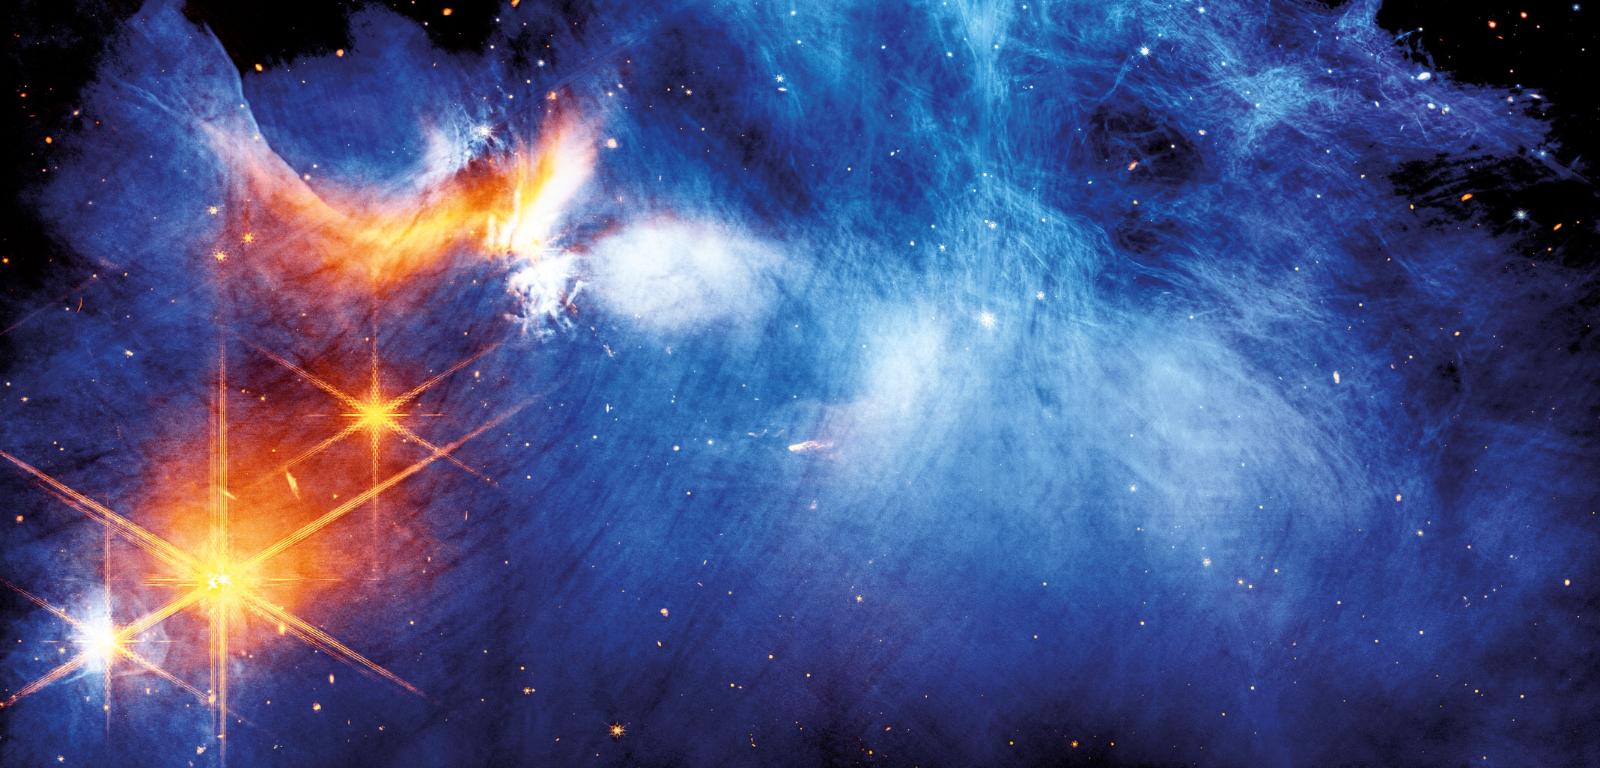 Centrum obłoku molekularnego Kameleon I. Zimna materia (kolor niebieski) oświetlana jest przez protogwiazdę Ced 110 IRS 4 (pomarańczowy).